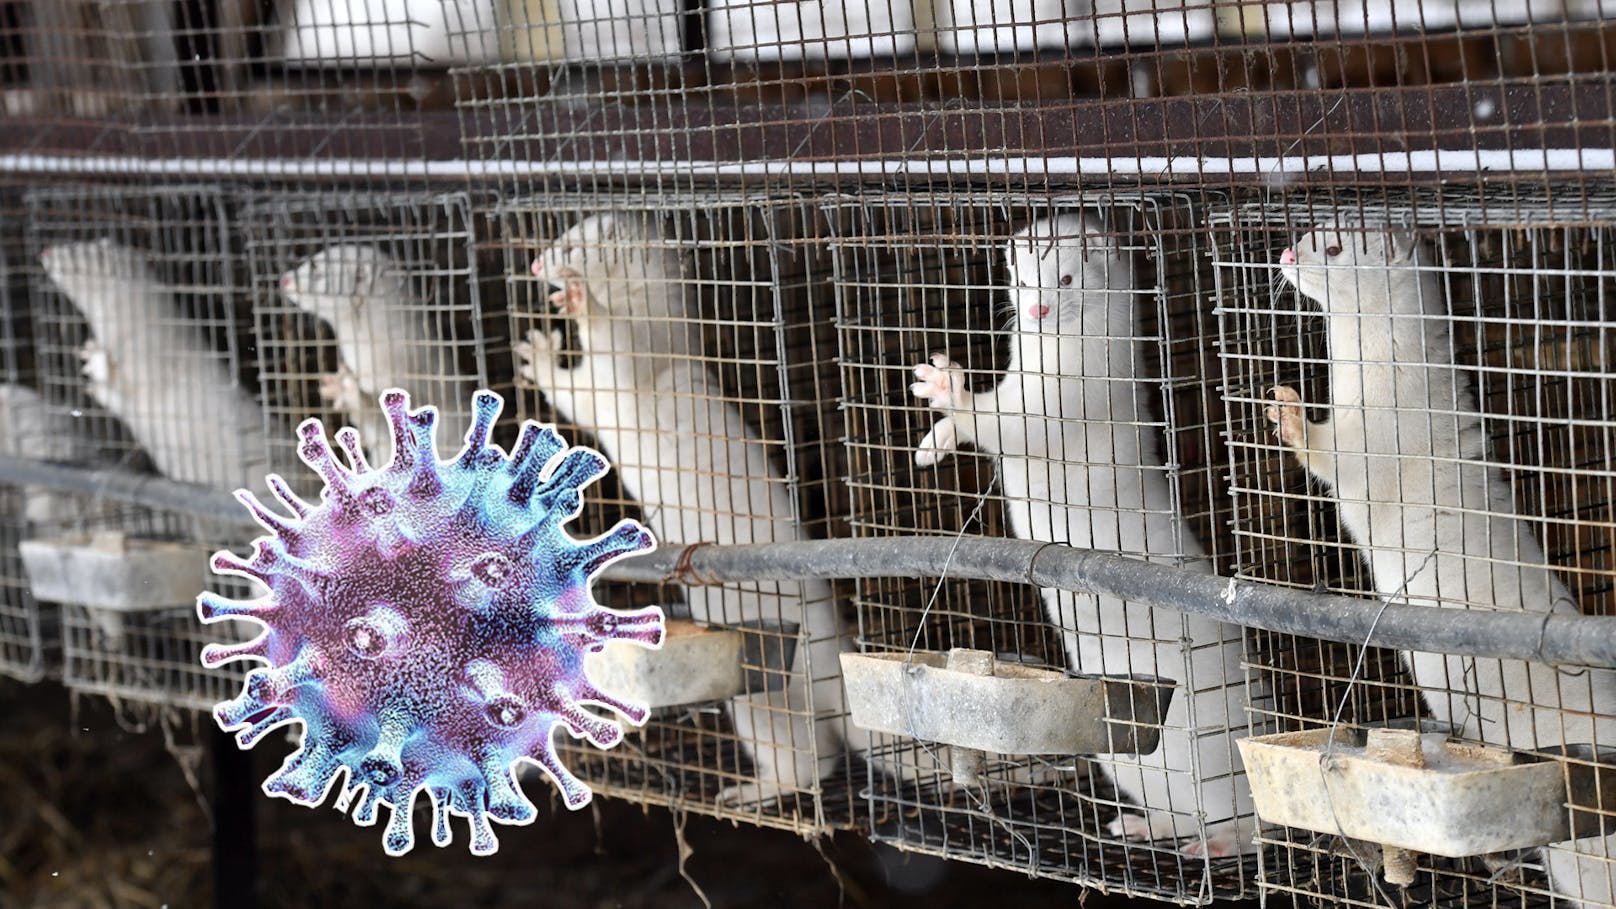 Erneut Coronavirus in niederländischer Pelzfarm nachgewiesen. Tierschutzorganisationen fordern Schließung.